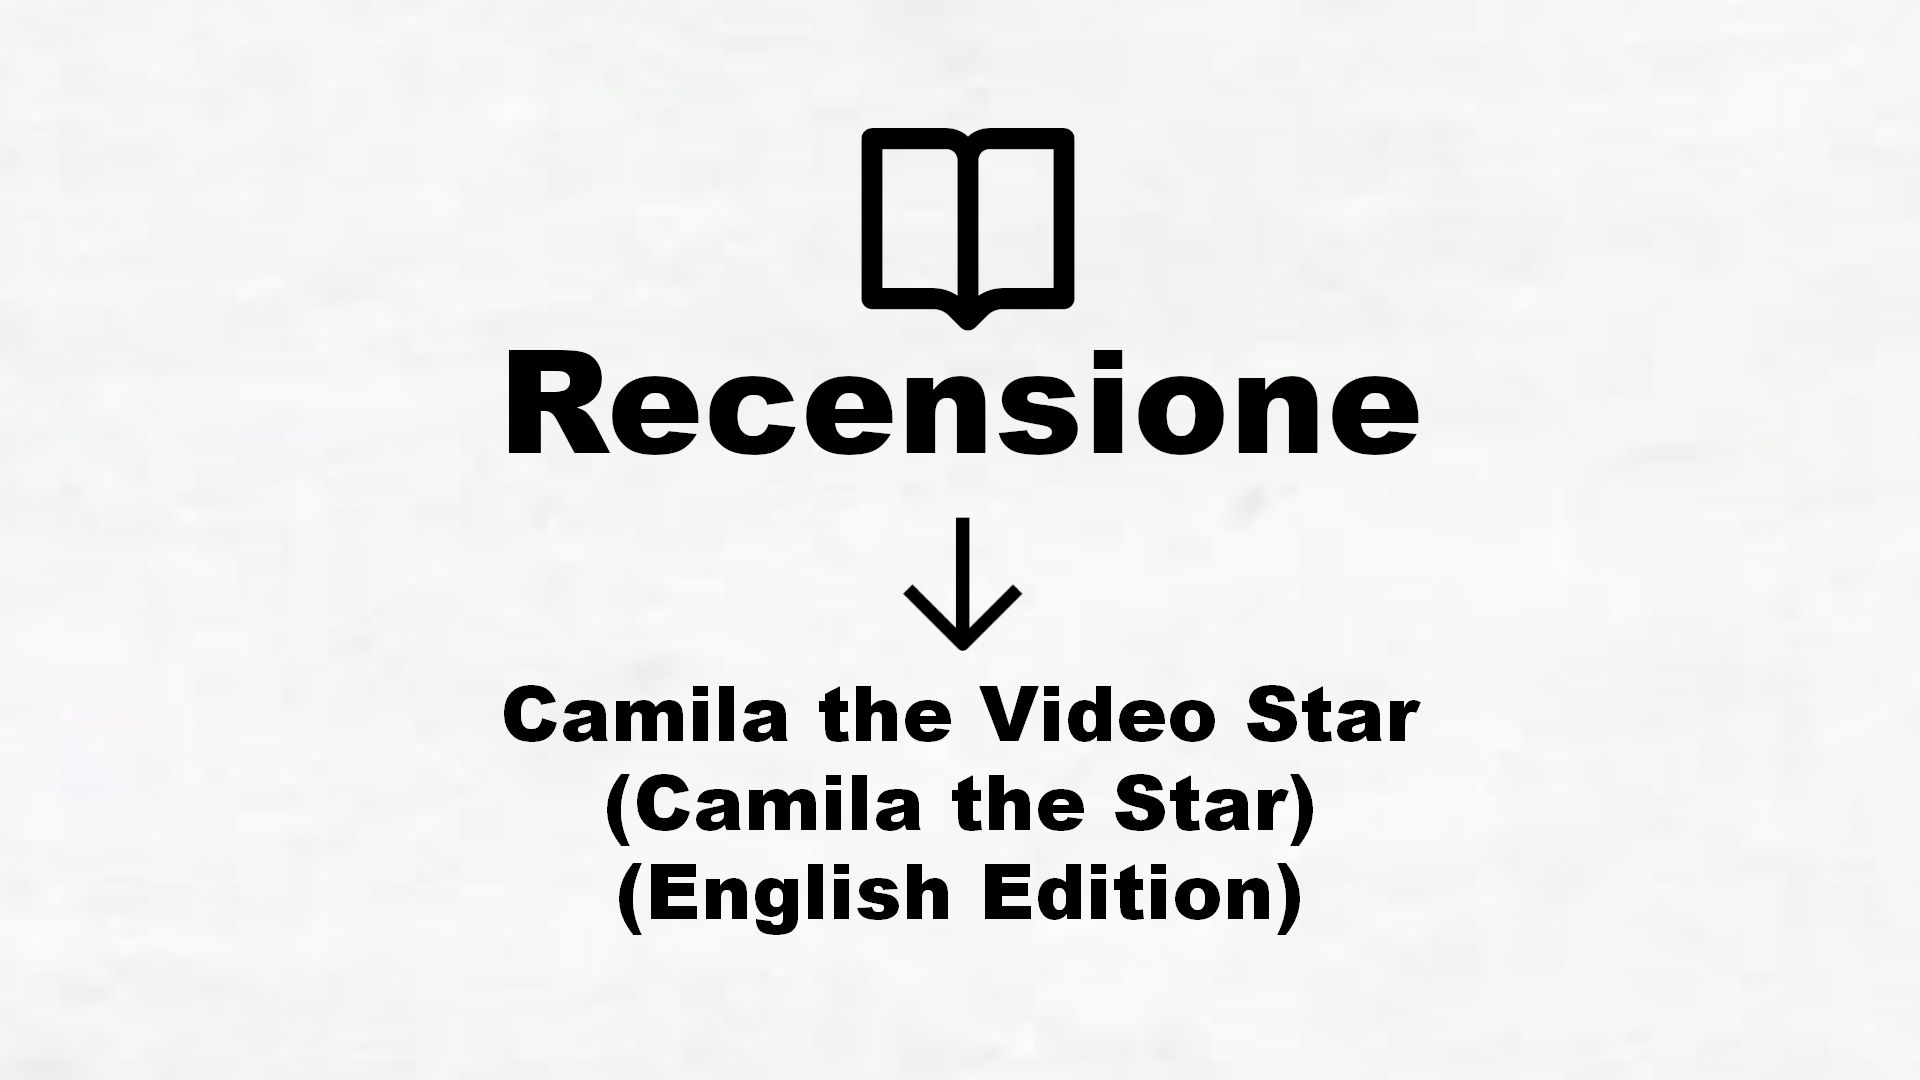 Camila the Video Star (Camila the Star) (English Edition) – Recensione Libro